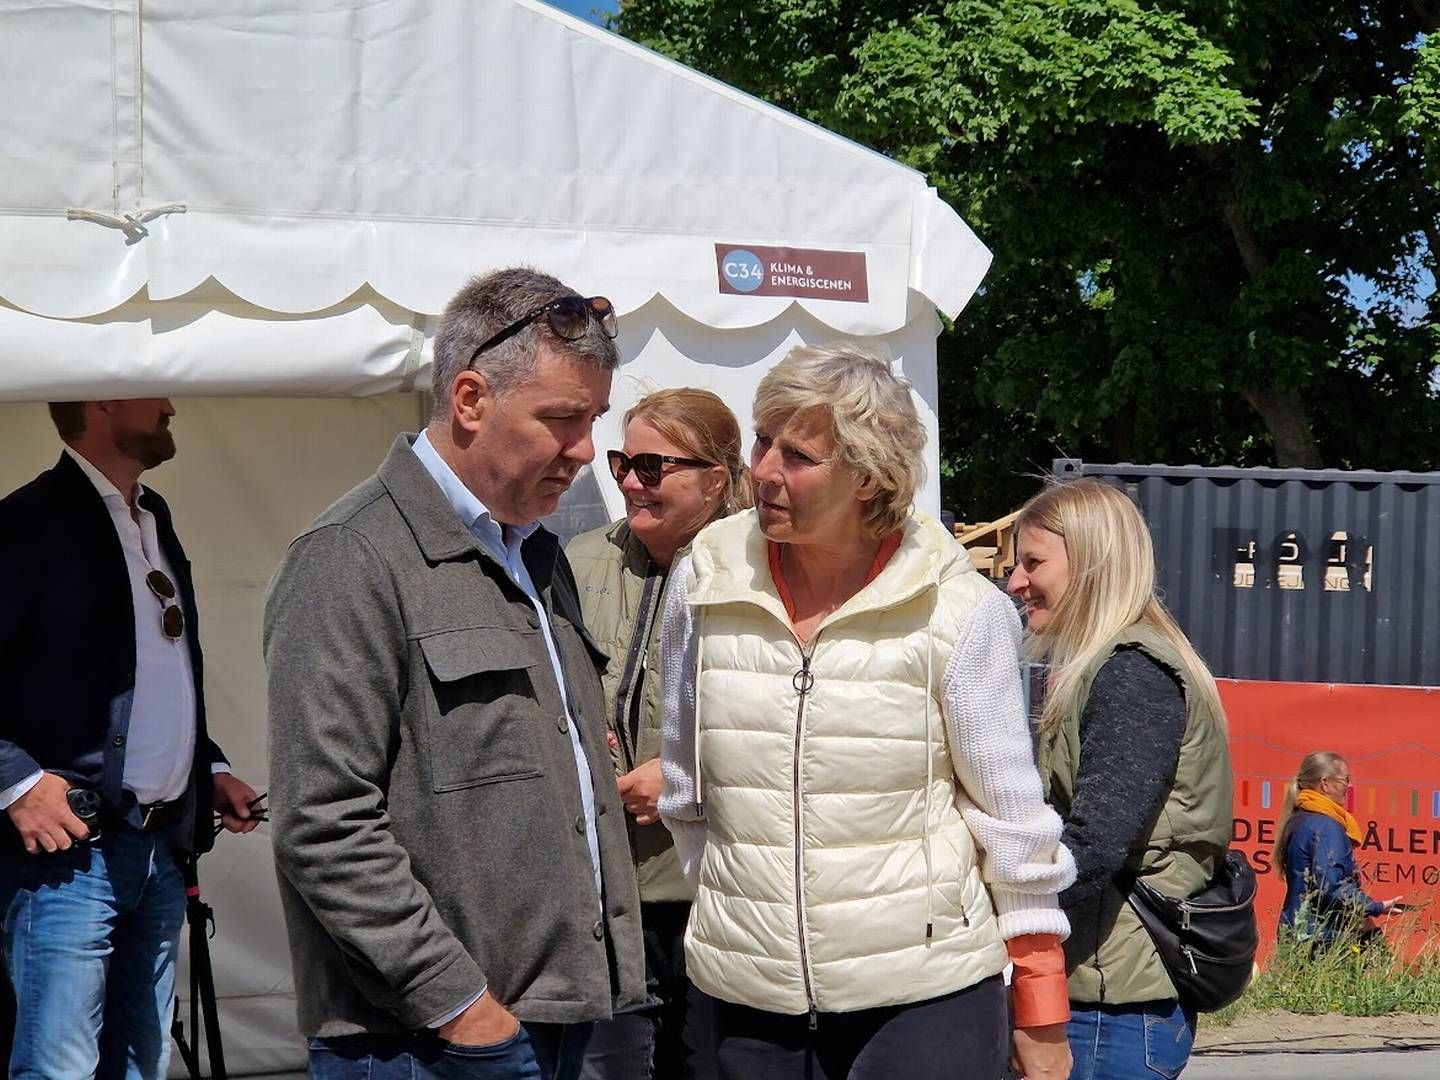 Lars Aagaard, klima og energiminister (M) sammen med tidligere konservativ toppolitiker Connie Hedegaard | Foto: Jakob Skouboe